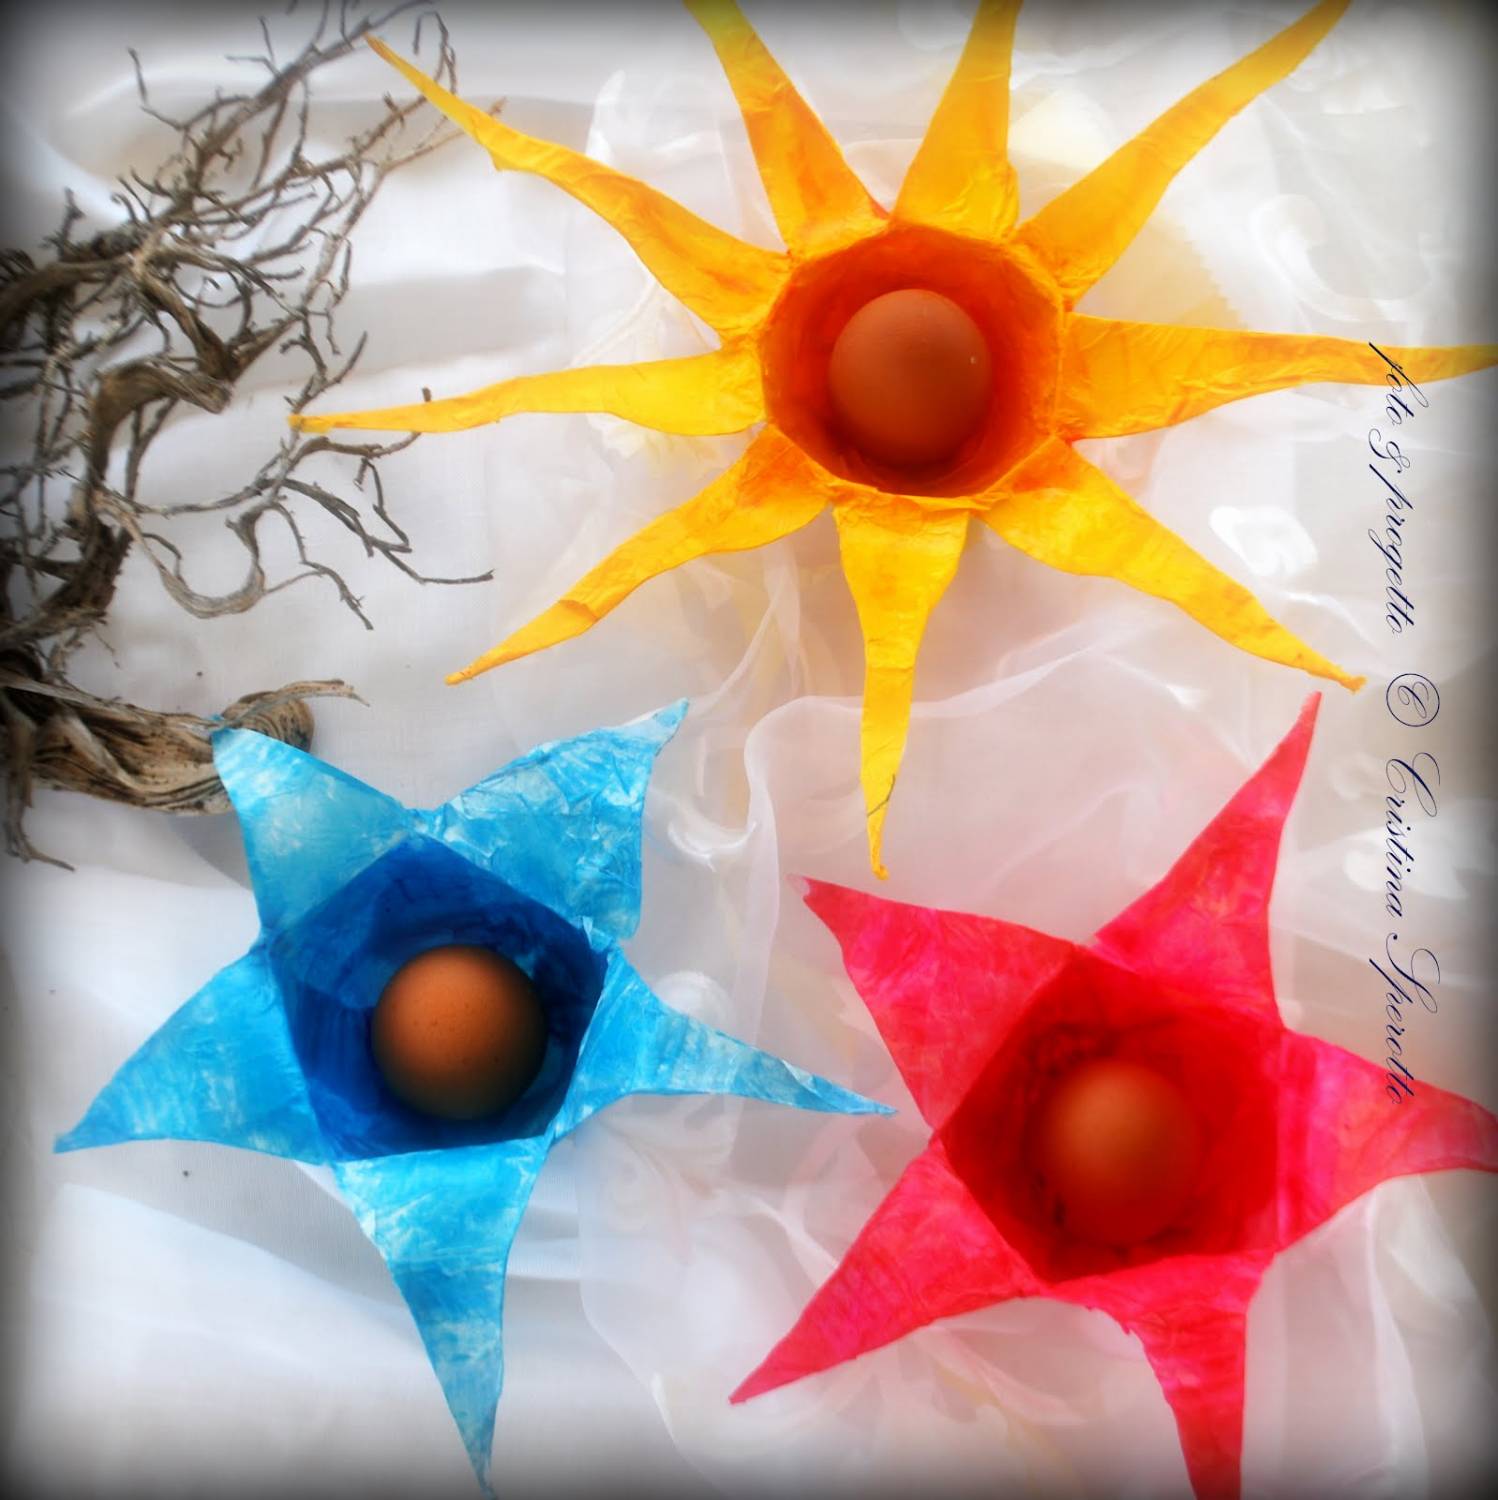 Пасхальные яйца в цветке из пластиковых бутылок (+ способы окрашивания яиц к Пасхе)